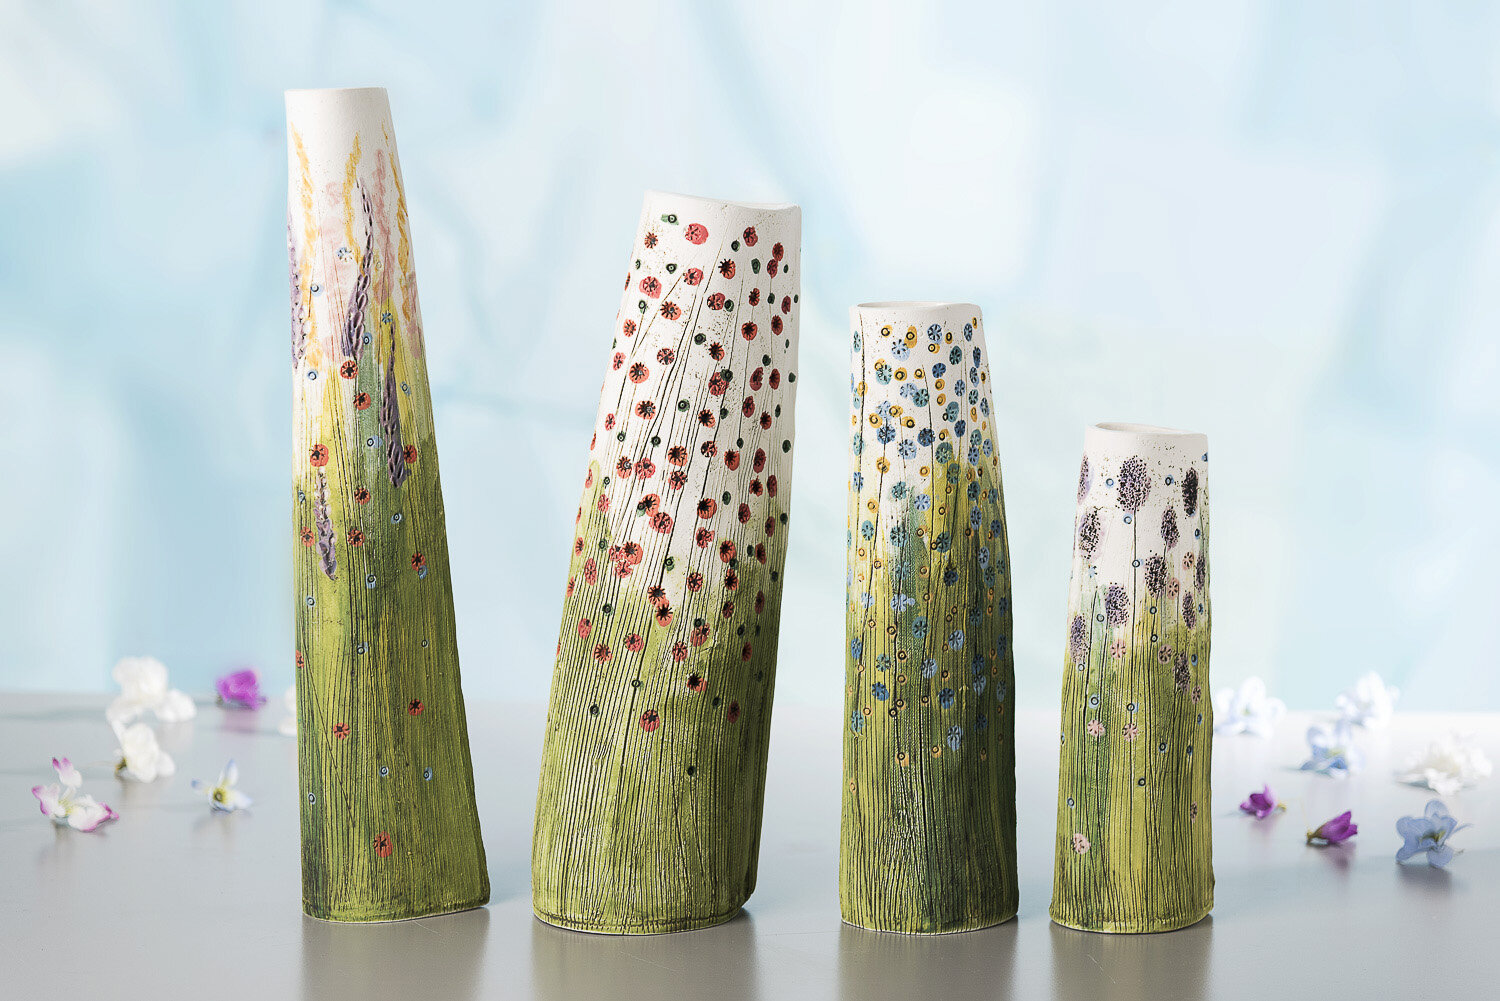 Floral vases, design and made by Ellen woods